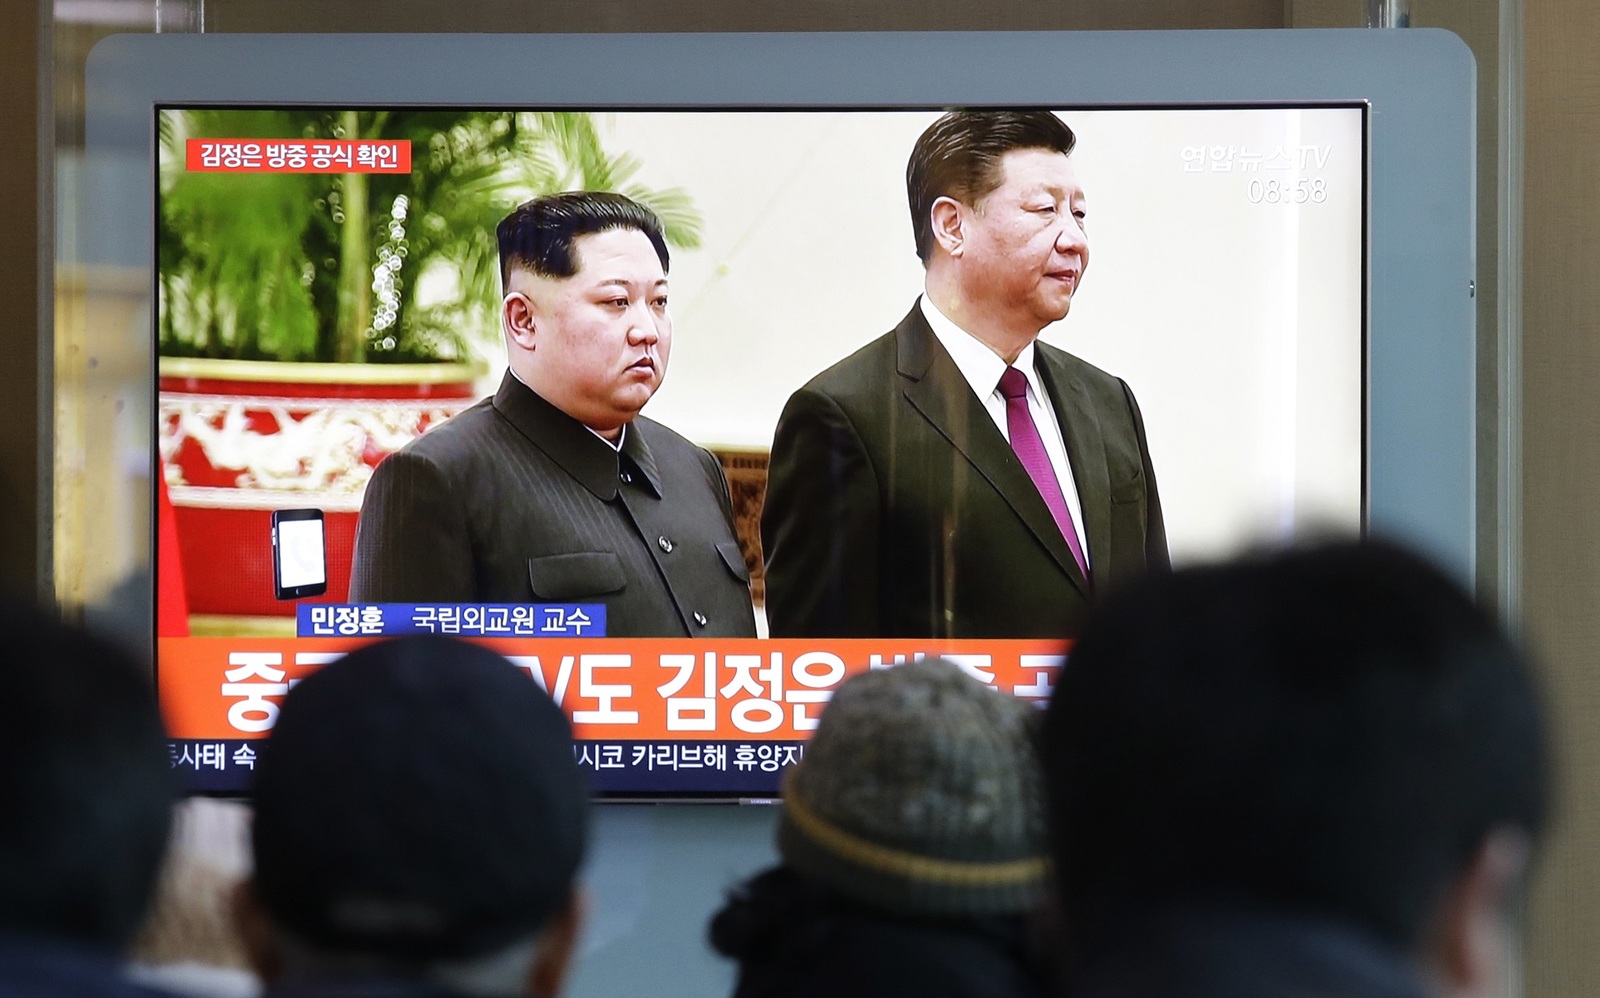 Cita. Kim Jong-un se encontrará con Xi Jinping en Beijing, informaron agencias oficiales de Norcorea y China. (AP)